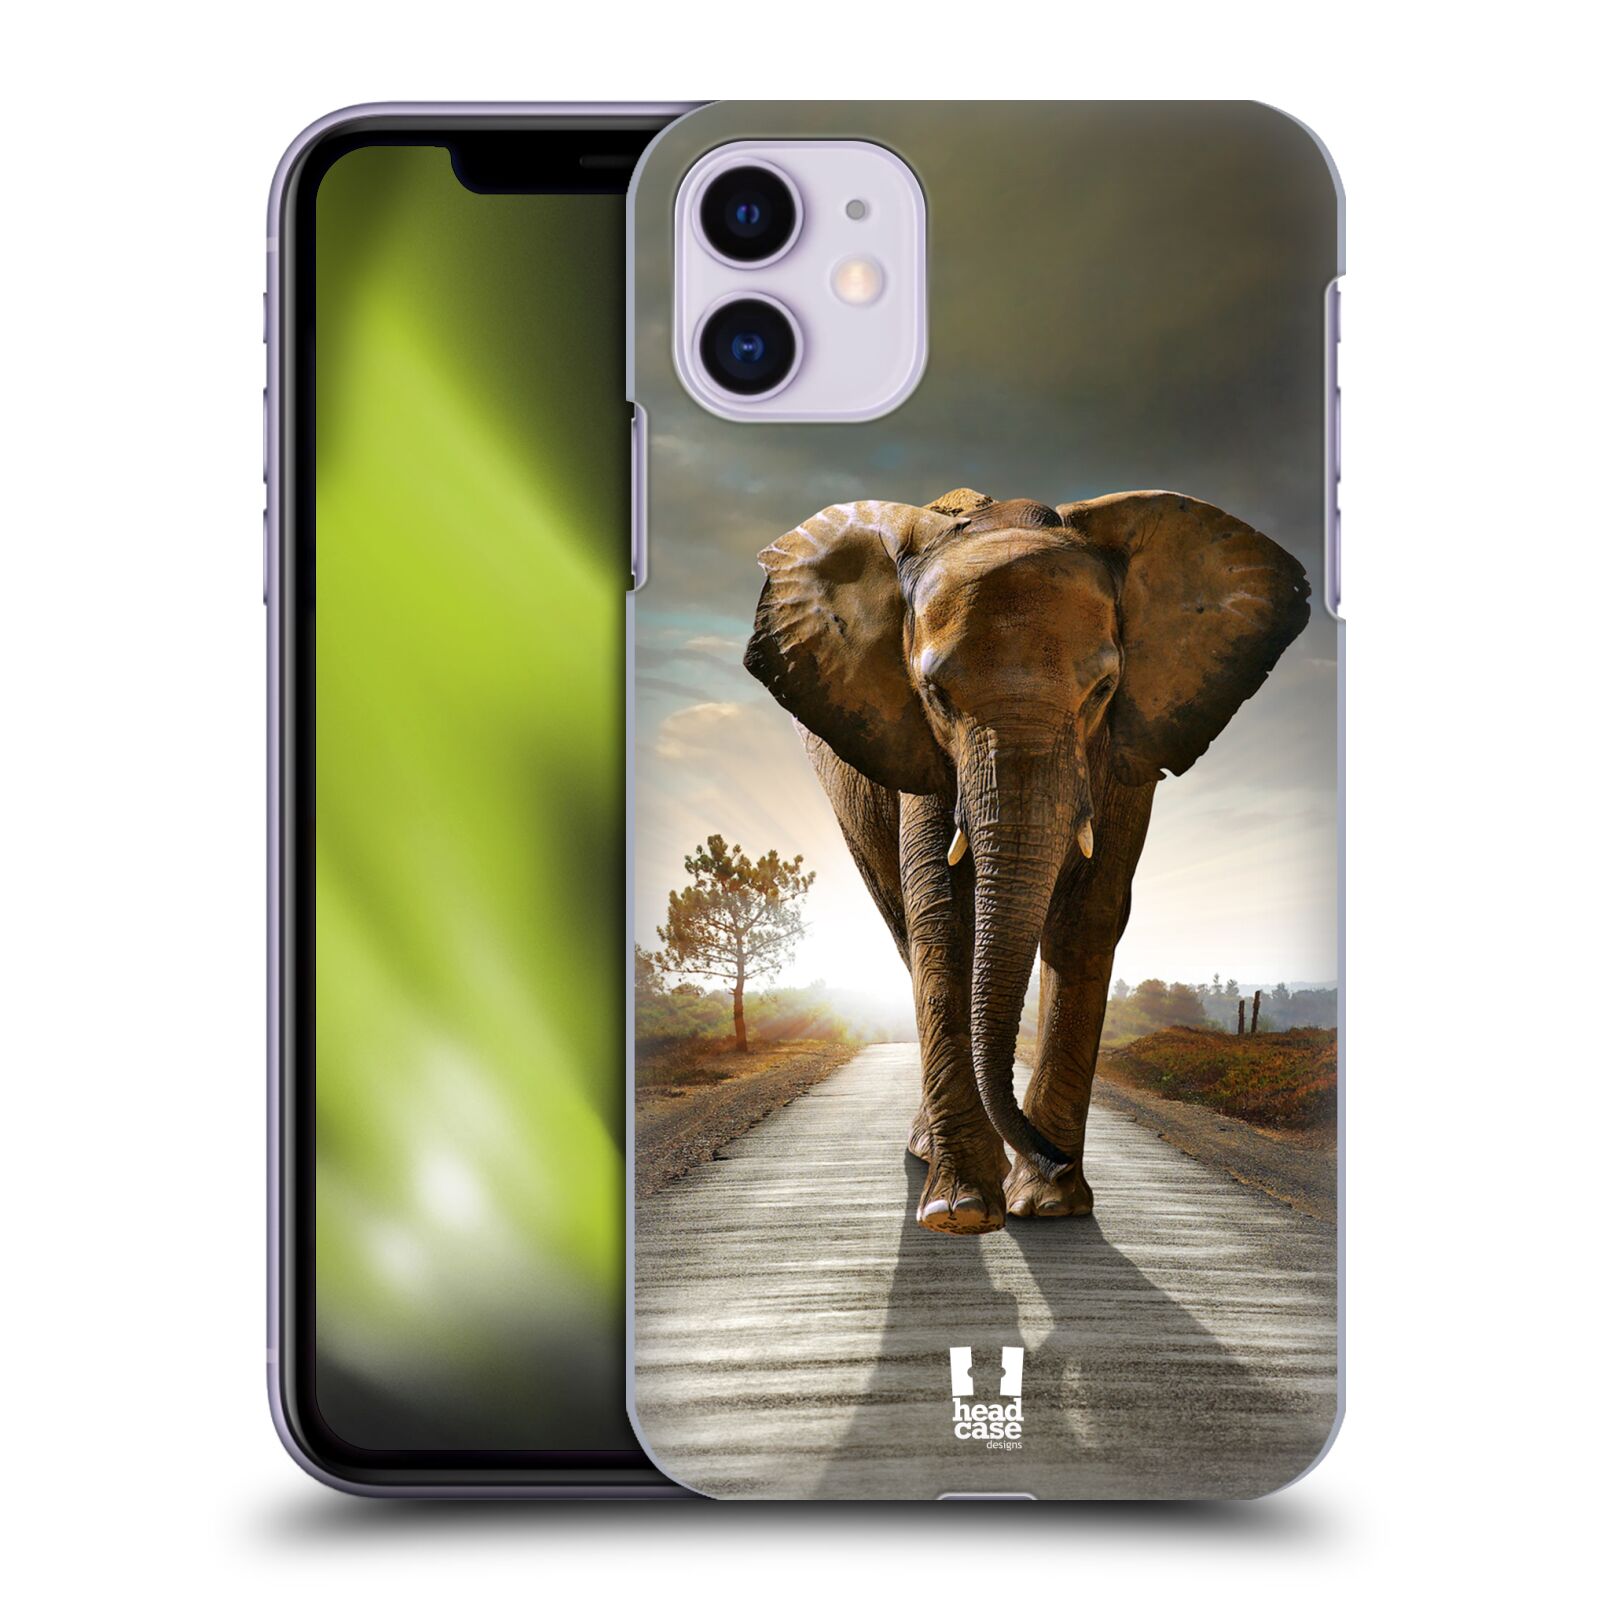 Zadní obal pro mobil Apple Iphone 11 - HEAD CASE - Svět zvířat kráčející slon